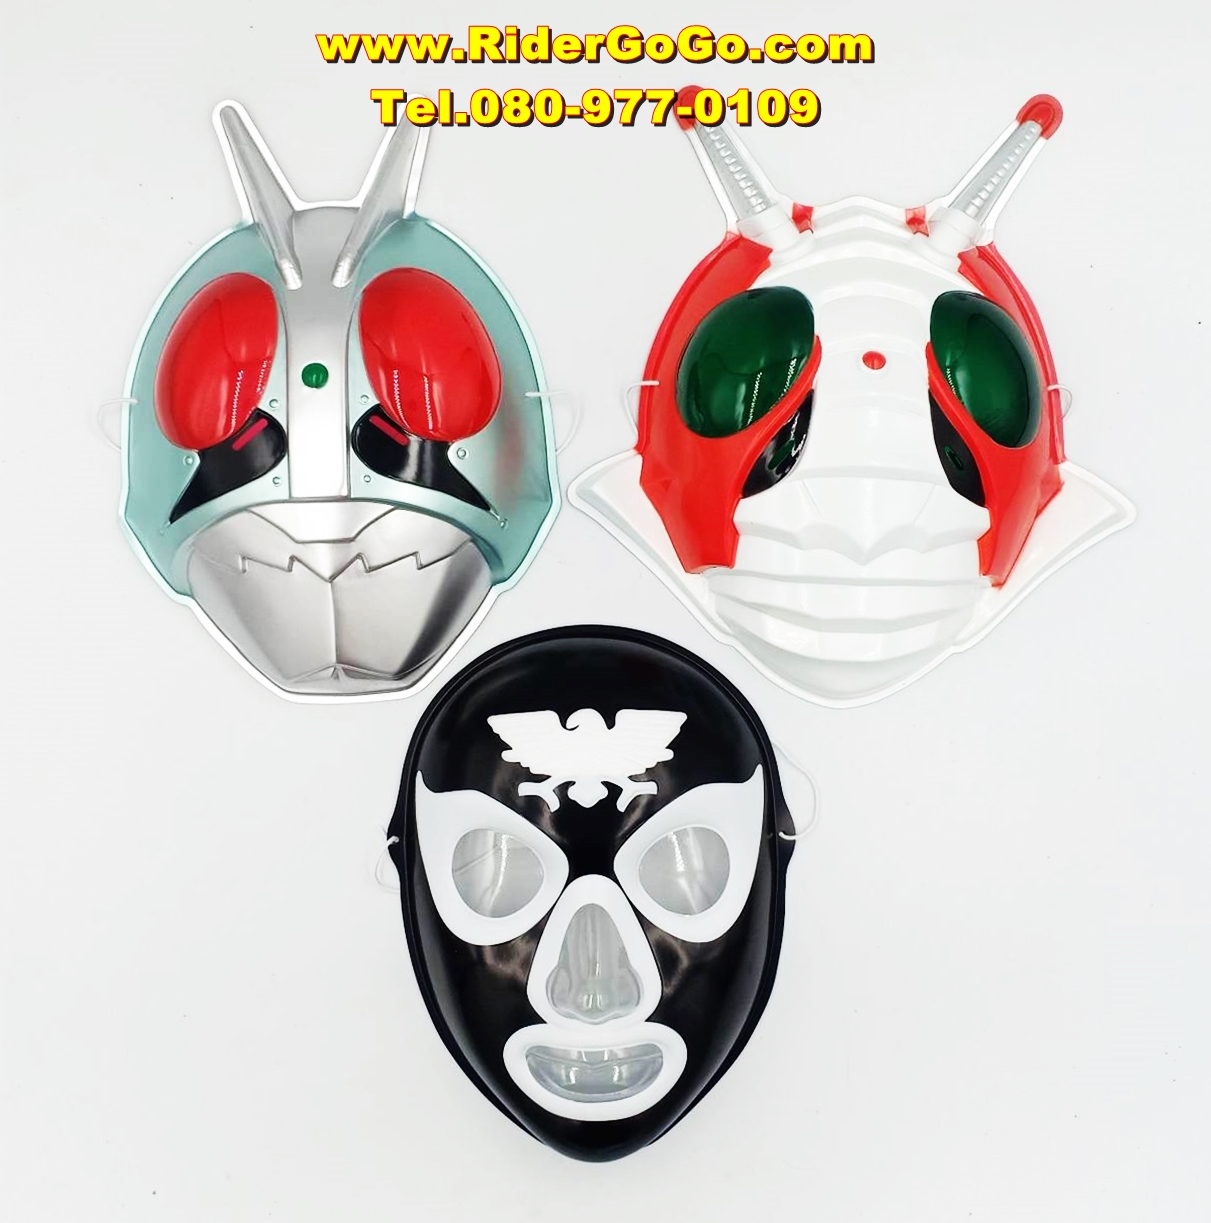 หน้ากากไอ้มดแดง หน้ากากมาสค์ไรเดอร์หมายเลข1 หน้ากากมาสค์ไรเดอร์วีสาม หน้ากากกีกี้ Masked Rider No.1 Masked Rider V3 Shocker Combatman Plastic Mask พลาสติกหนาอย่างดี ของแท้จากประเทศญี่ปุ่น รูปที่ 1